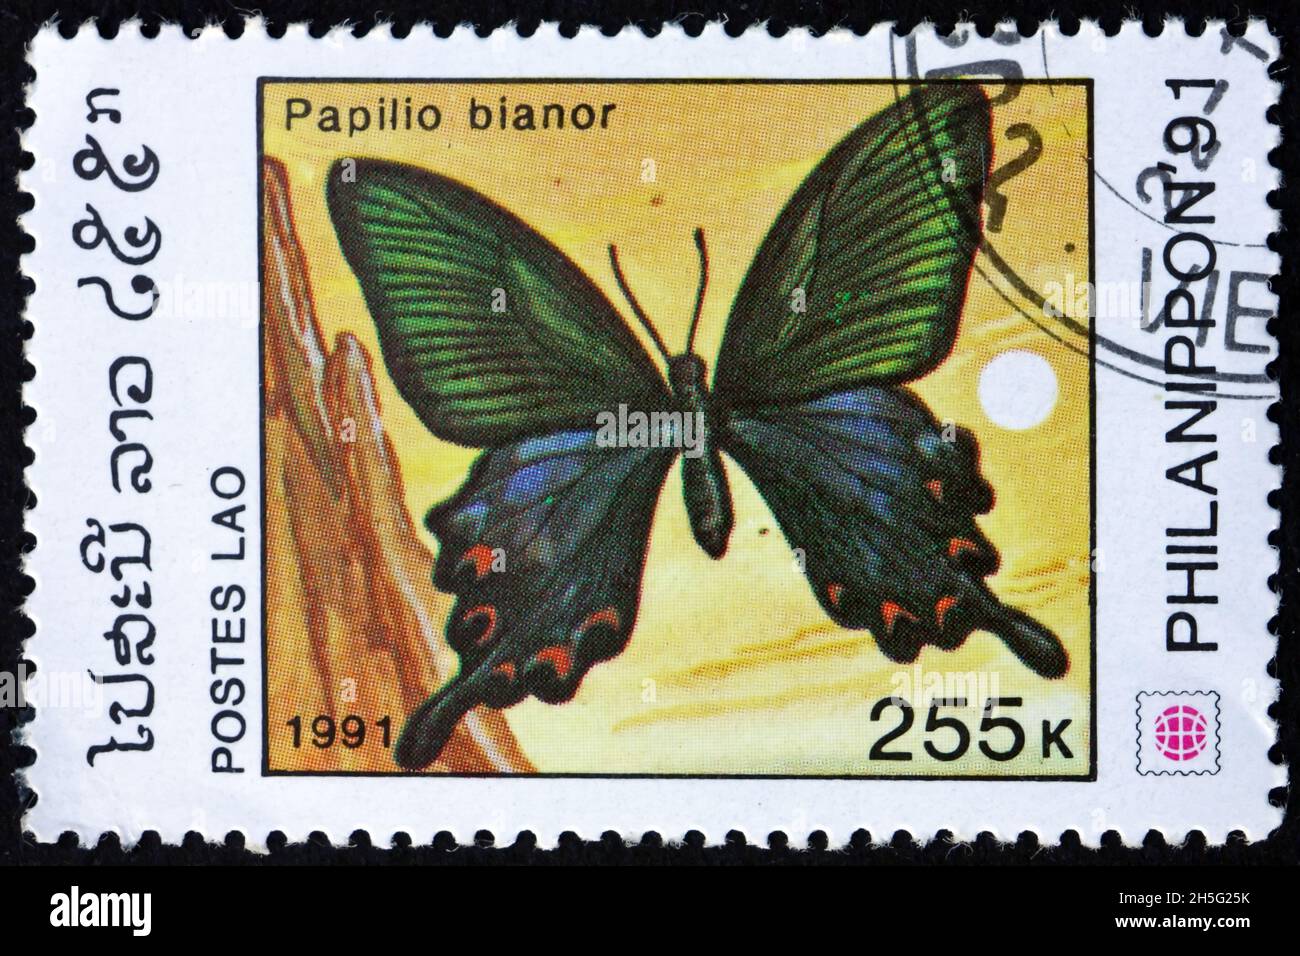 LAOS - VERS 1991: Un timbre imprimé au Laos montre paon commun, papillio bianor, papillon, vers 1991 Banque D'Images